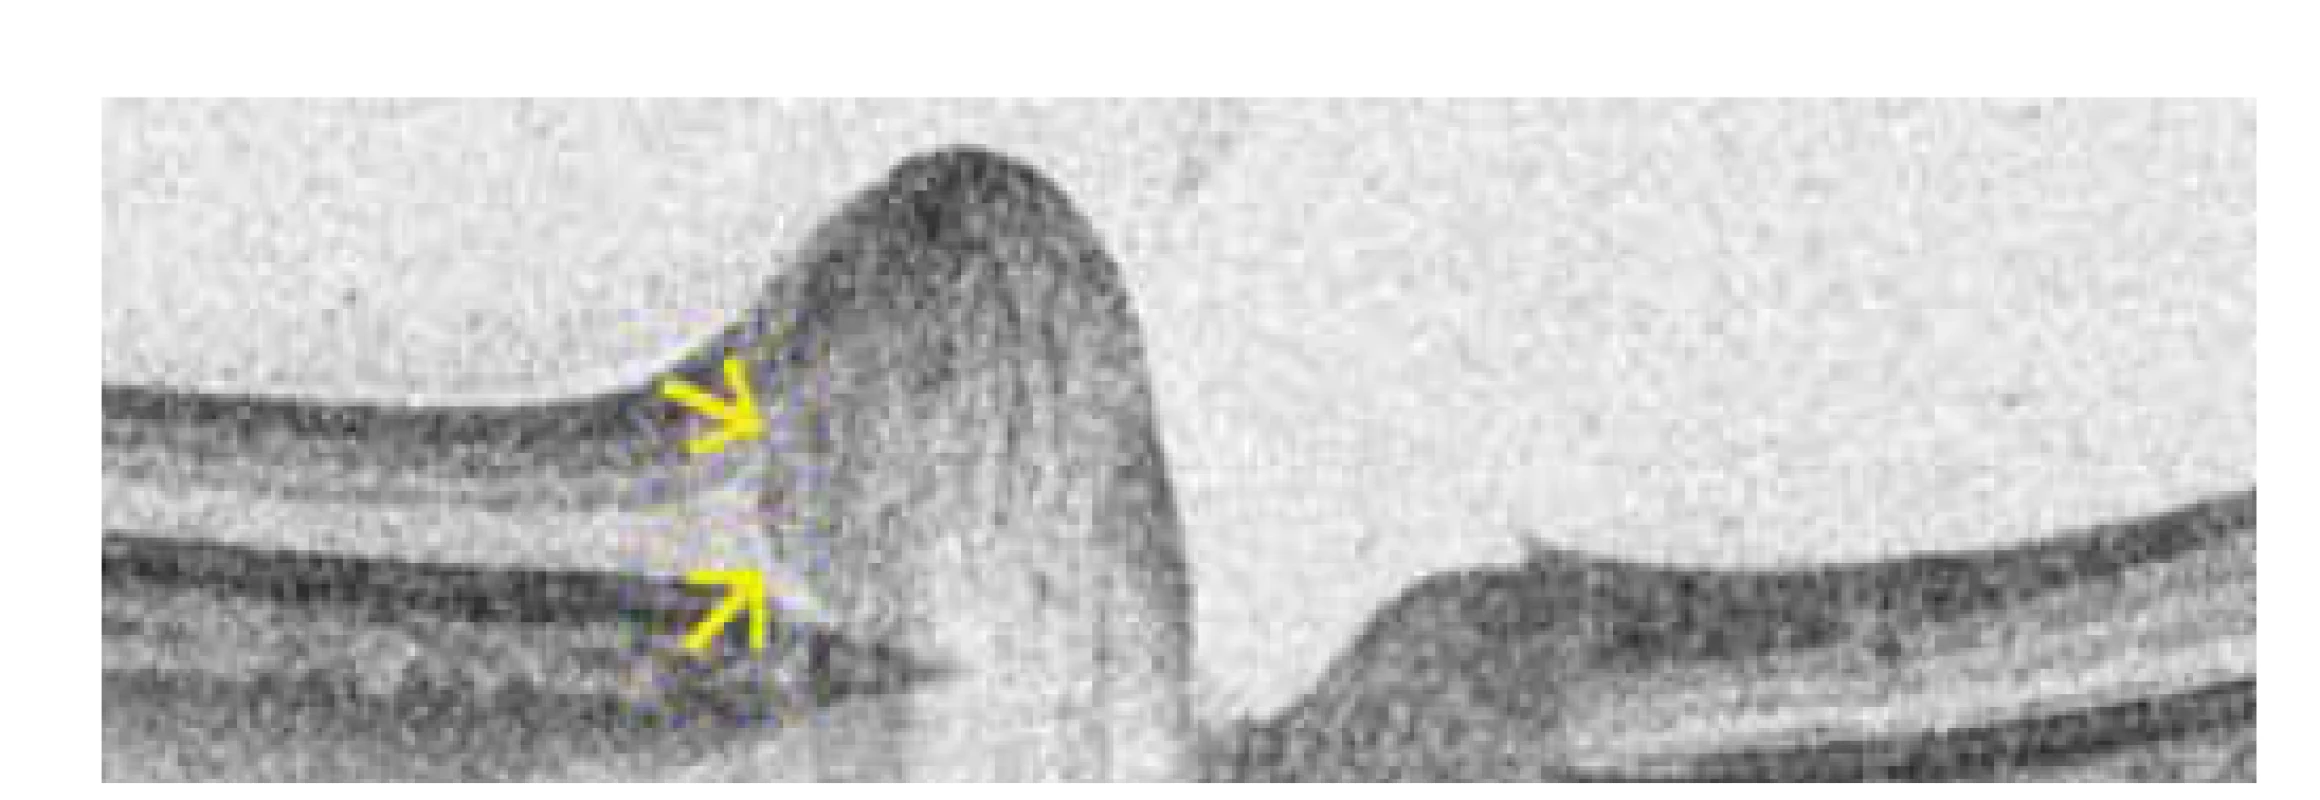 Hyperreflektivní ovoidní léze (anglicky peripapillary
hyperreflective ovoid mass-like structure, zkráceně PHOMS) terče
zrakového nervu u jednoho z našich pacientů. Toto ložisko by nemělo
být označeno jako drúza